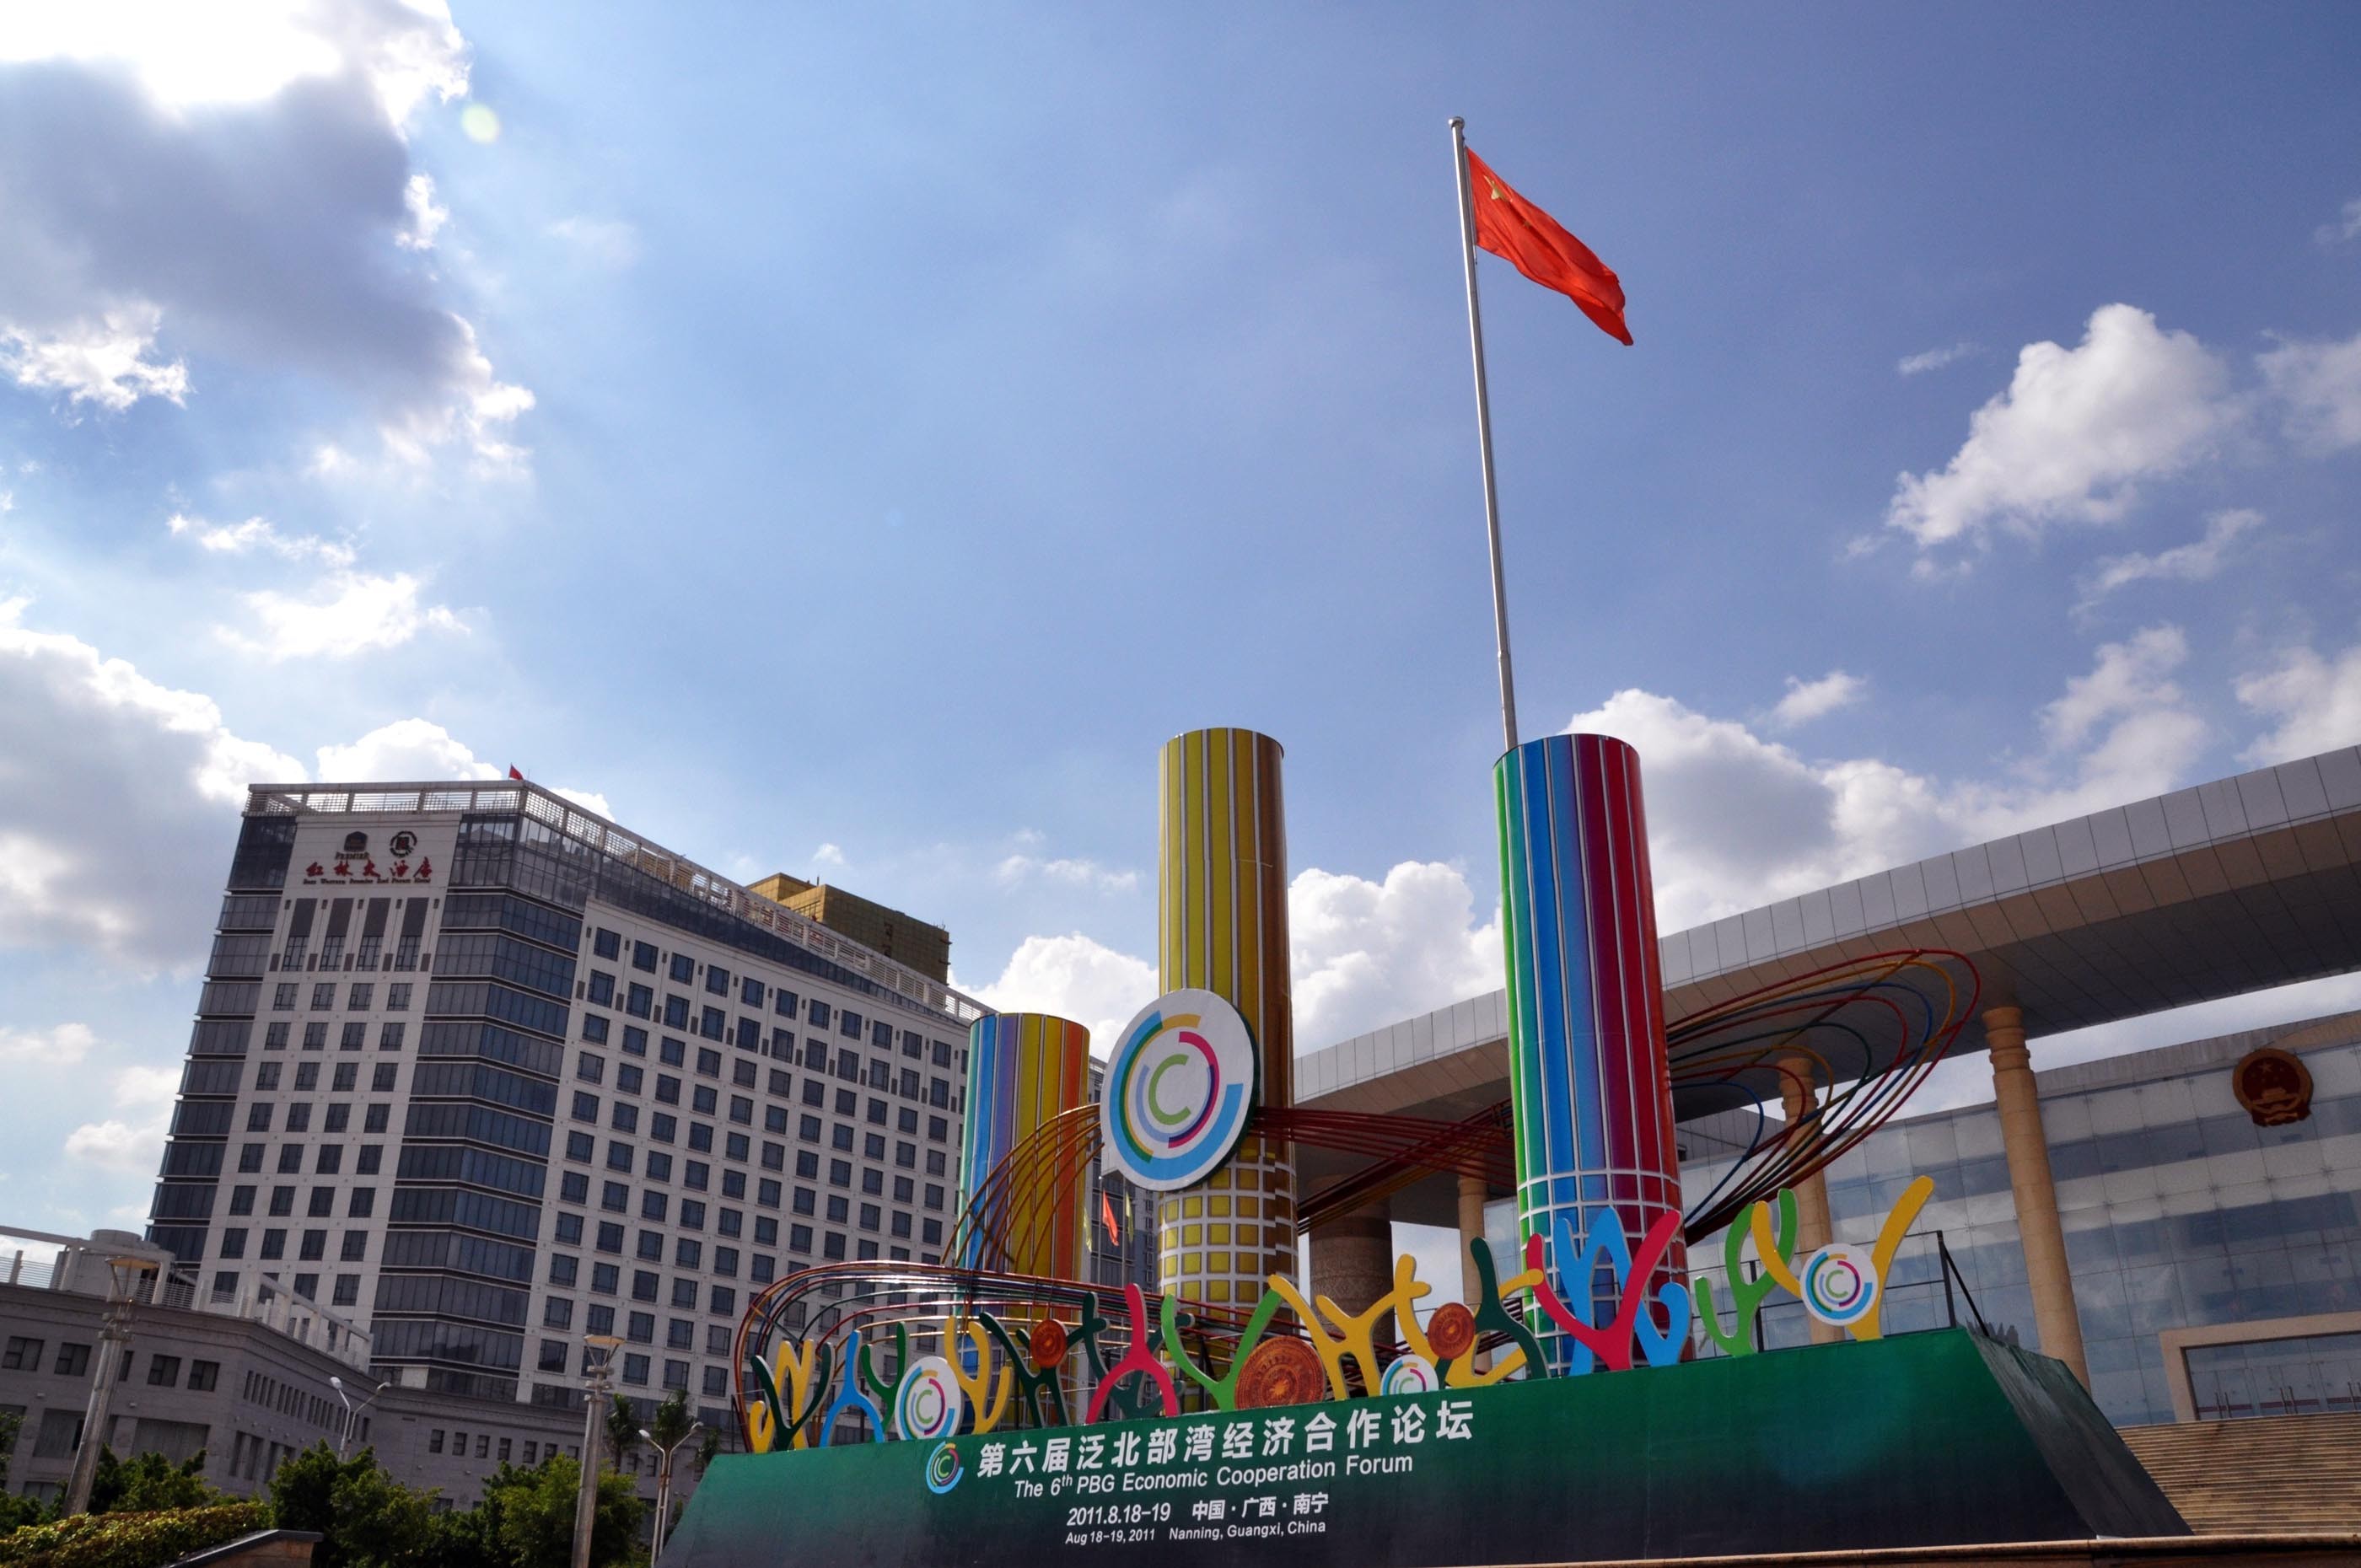 第六届泛北部湾经济合作论坛将在广西南宁举行